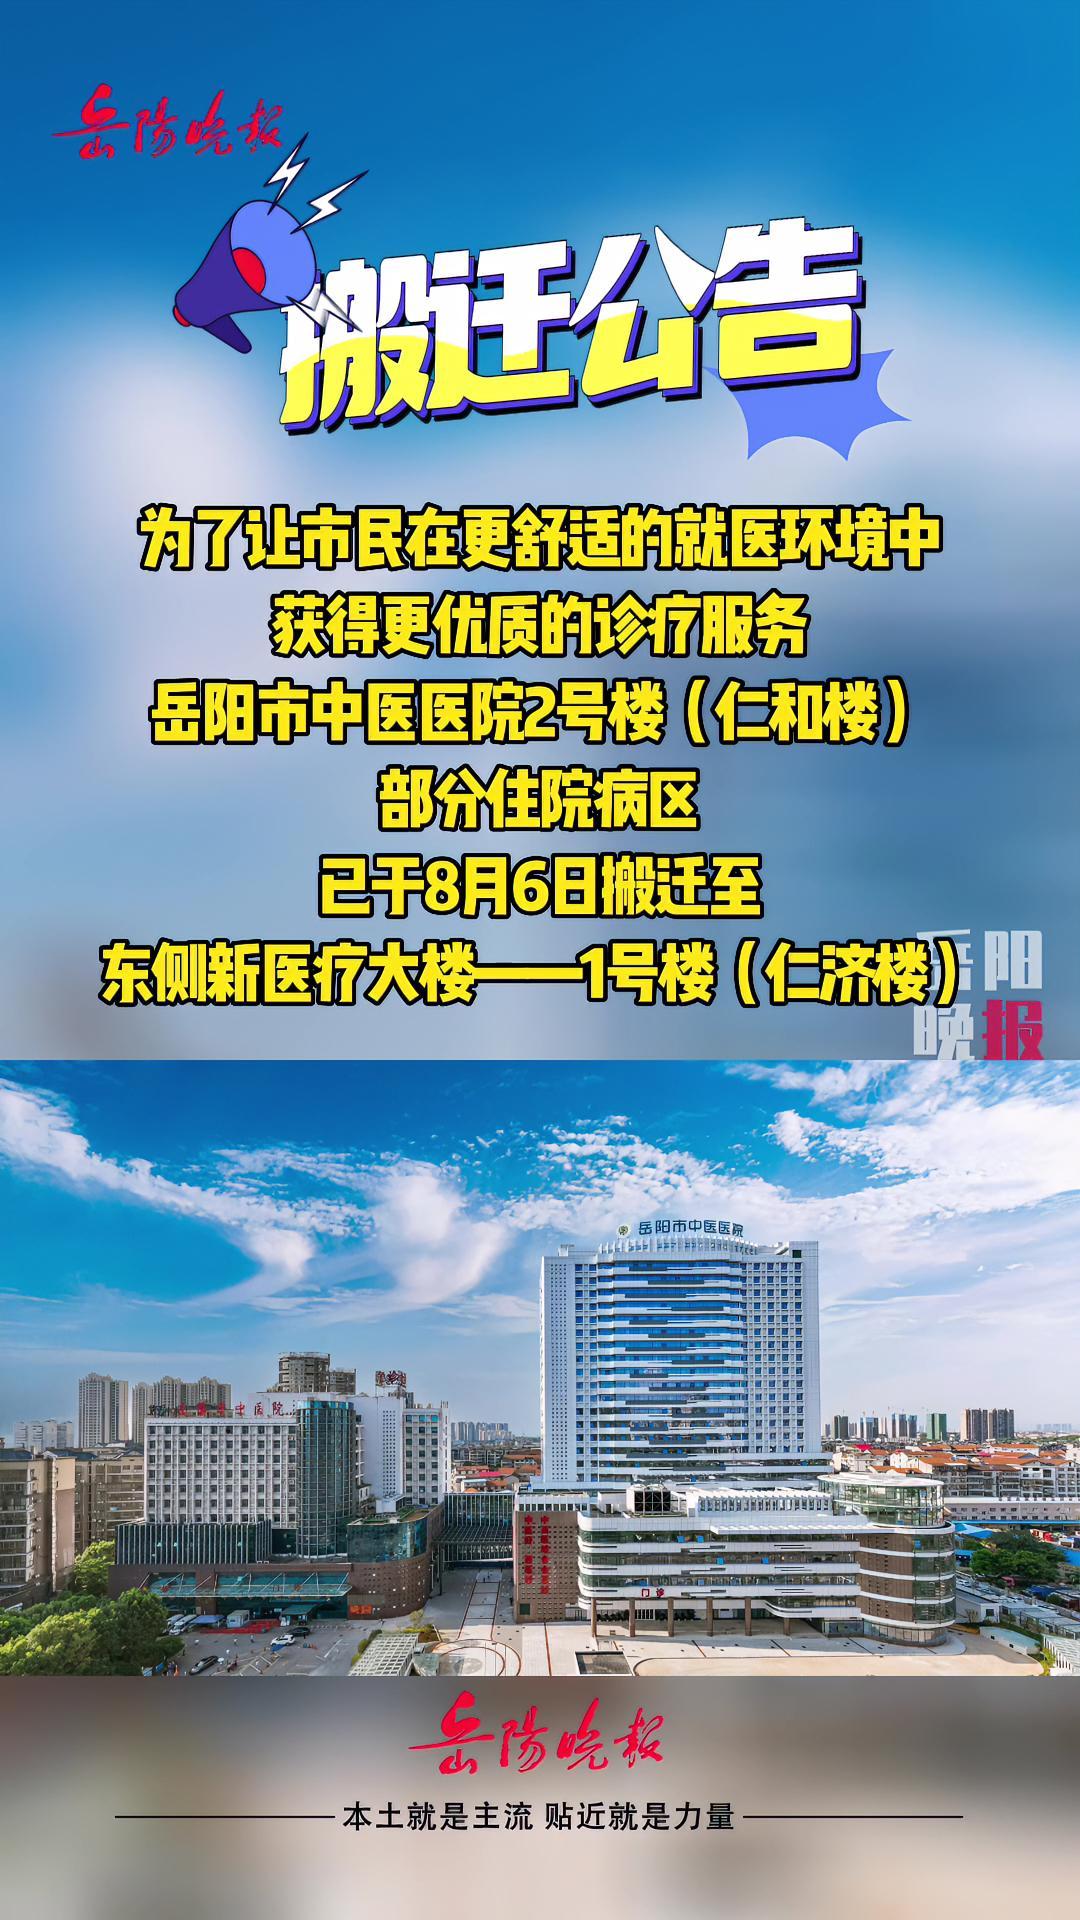 注意!岳阳市中医医院部分住院病区已搬迁至新医疗大楼 岳阳